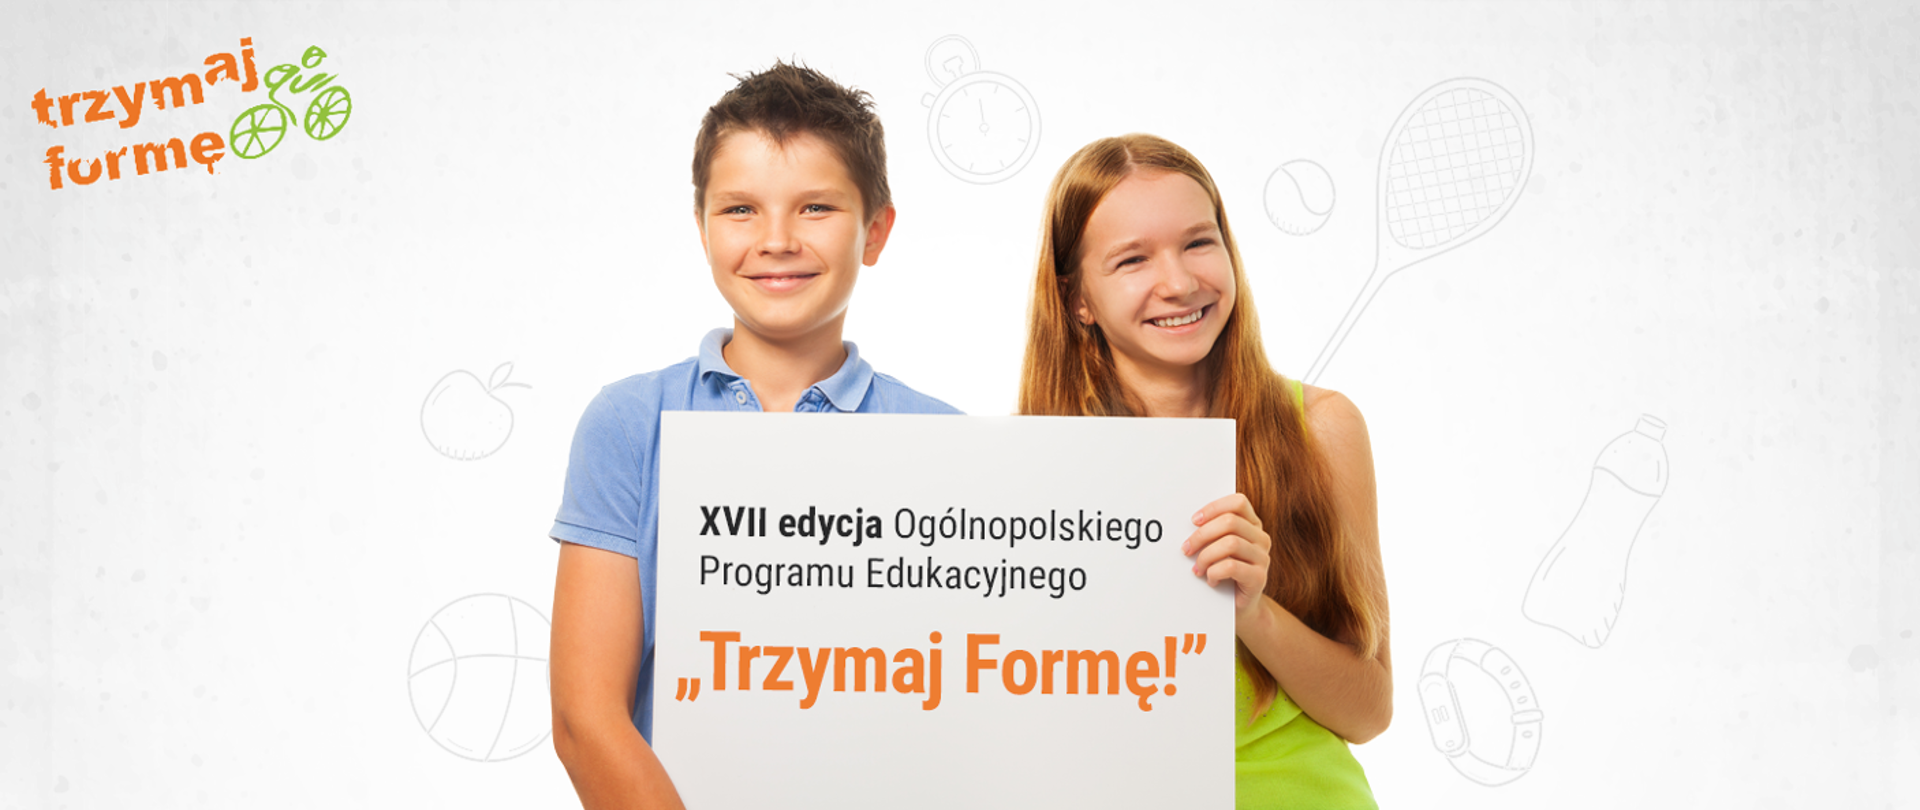 Chłopiec i dziewczynka trzymający kartkę z napisem "XVII edycja Ogólnopolskiego Programu Edukacyjnego "Trzymaj Formę"